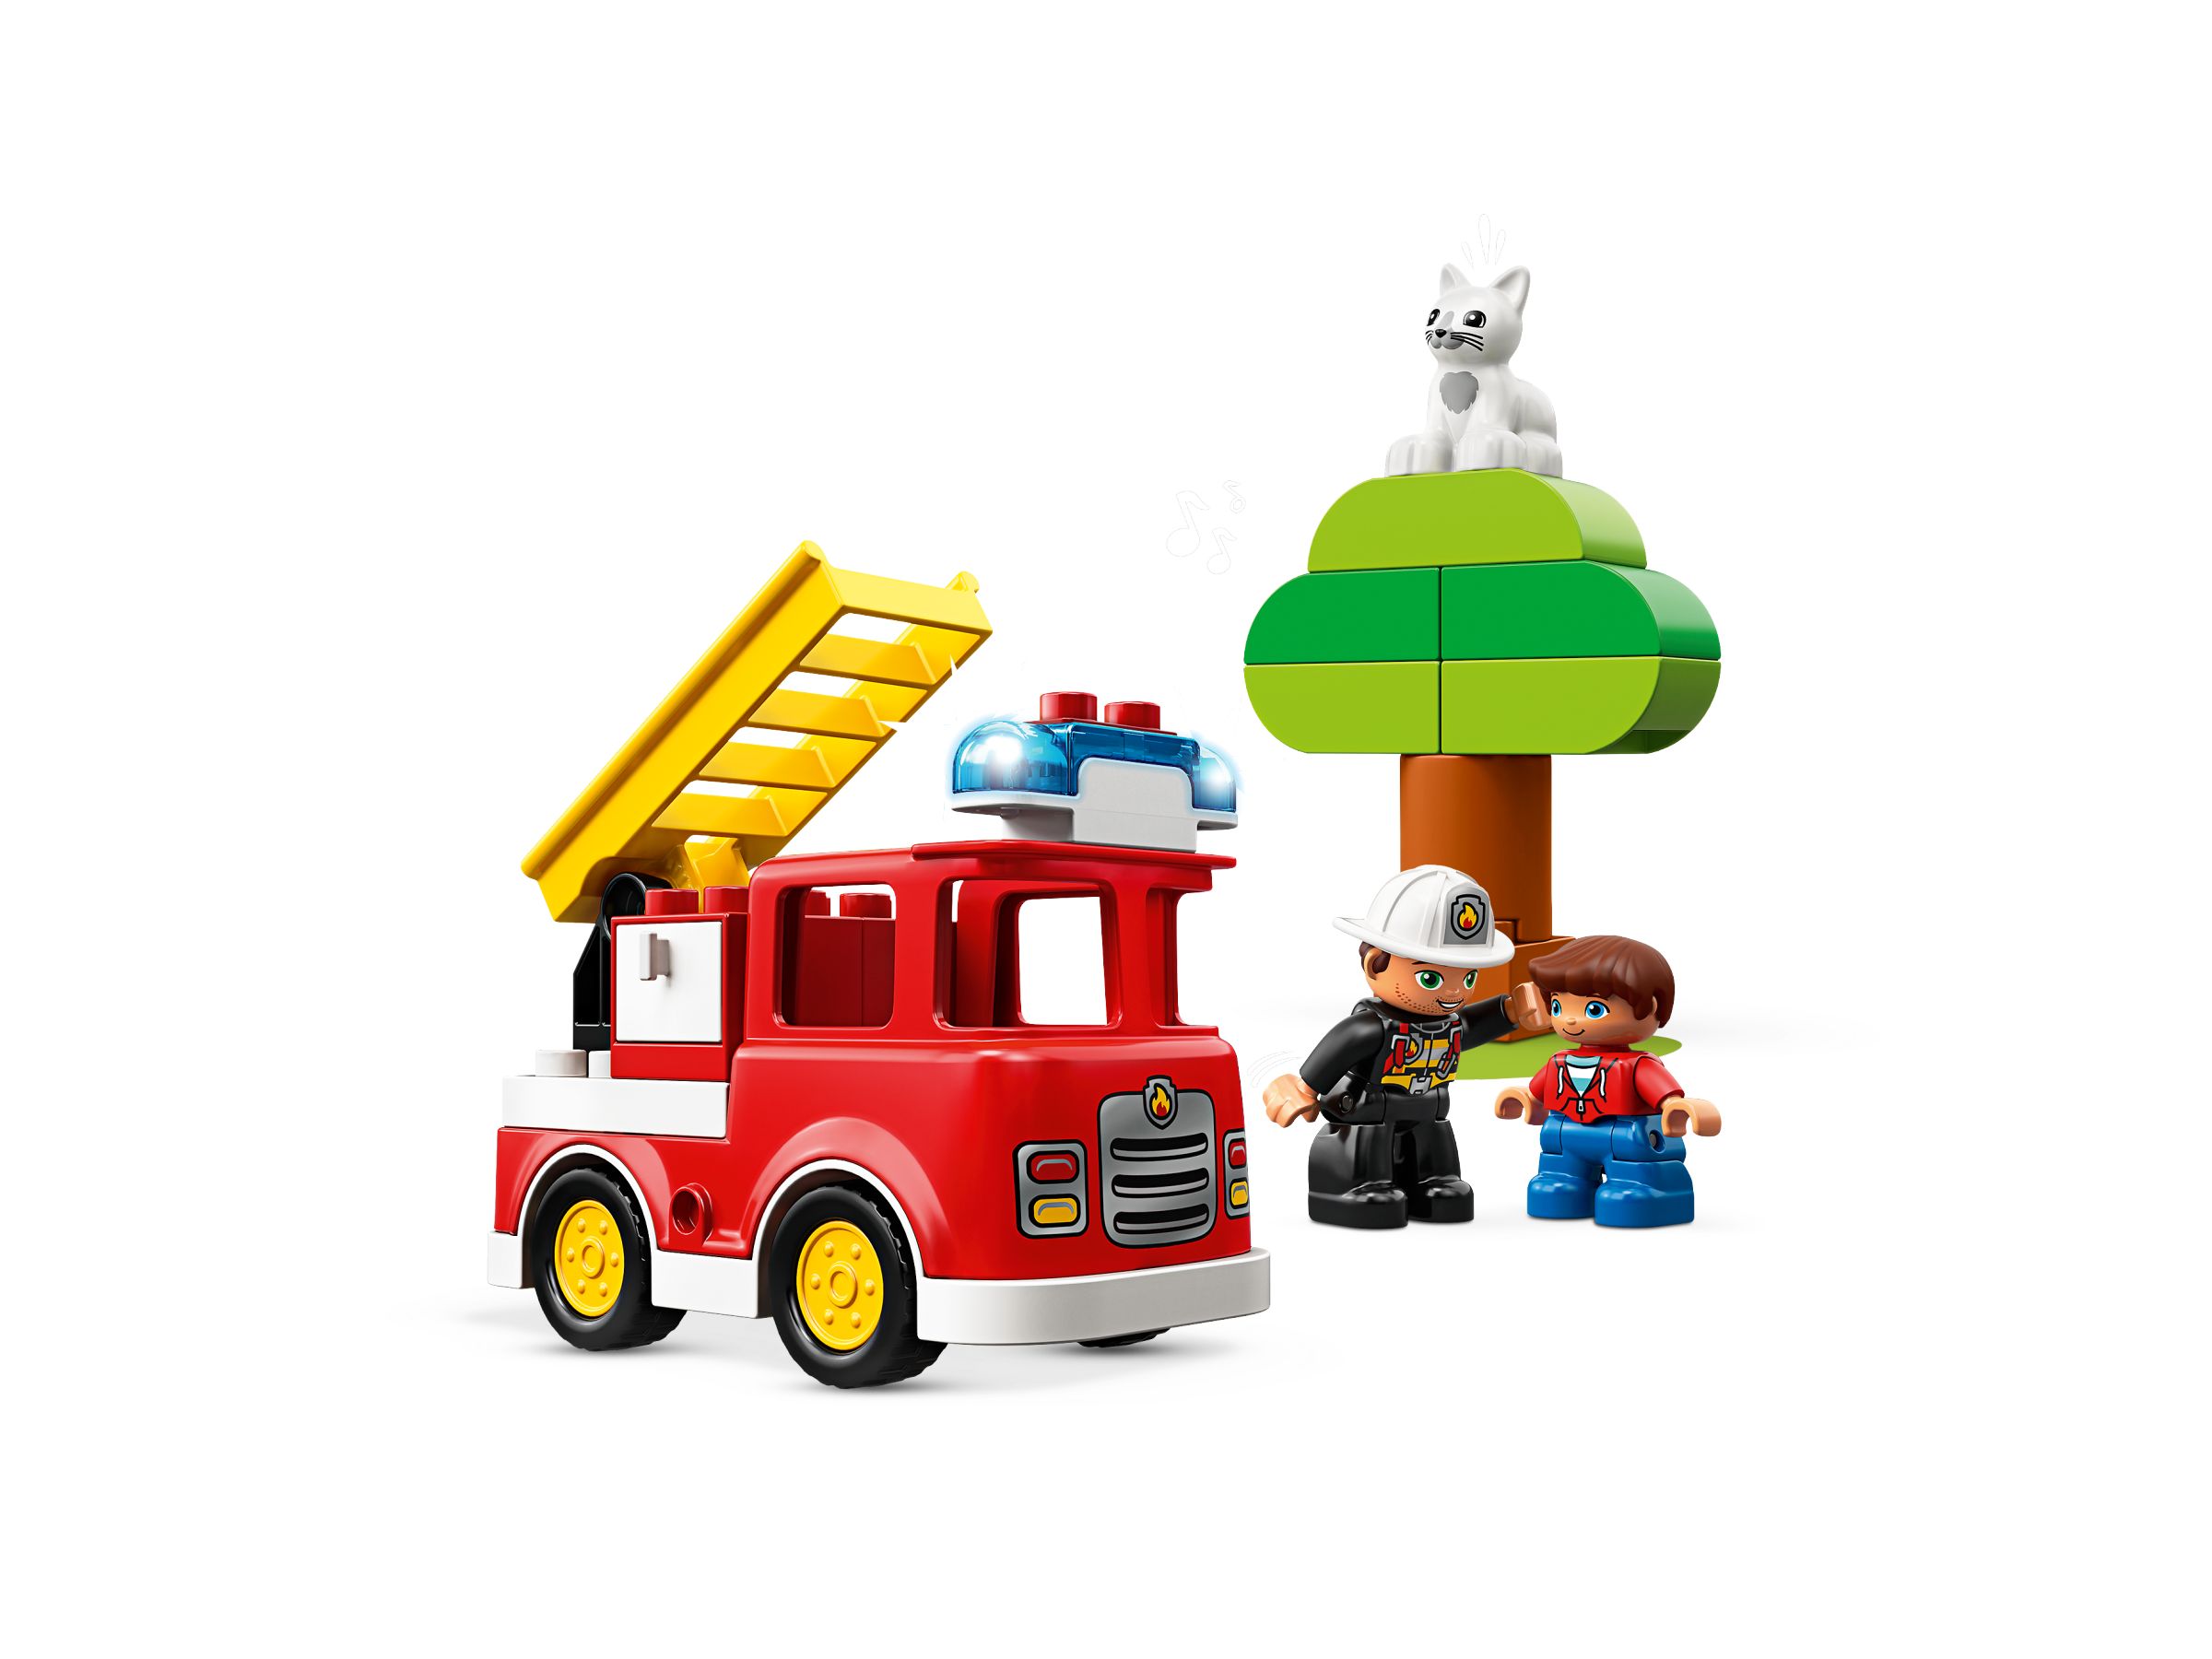 LEGO Duplo 10901 Feuerwehrauto LEGO_10901_alt2.jpg